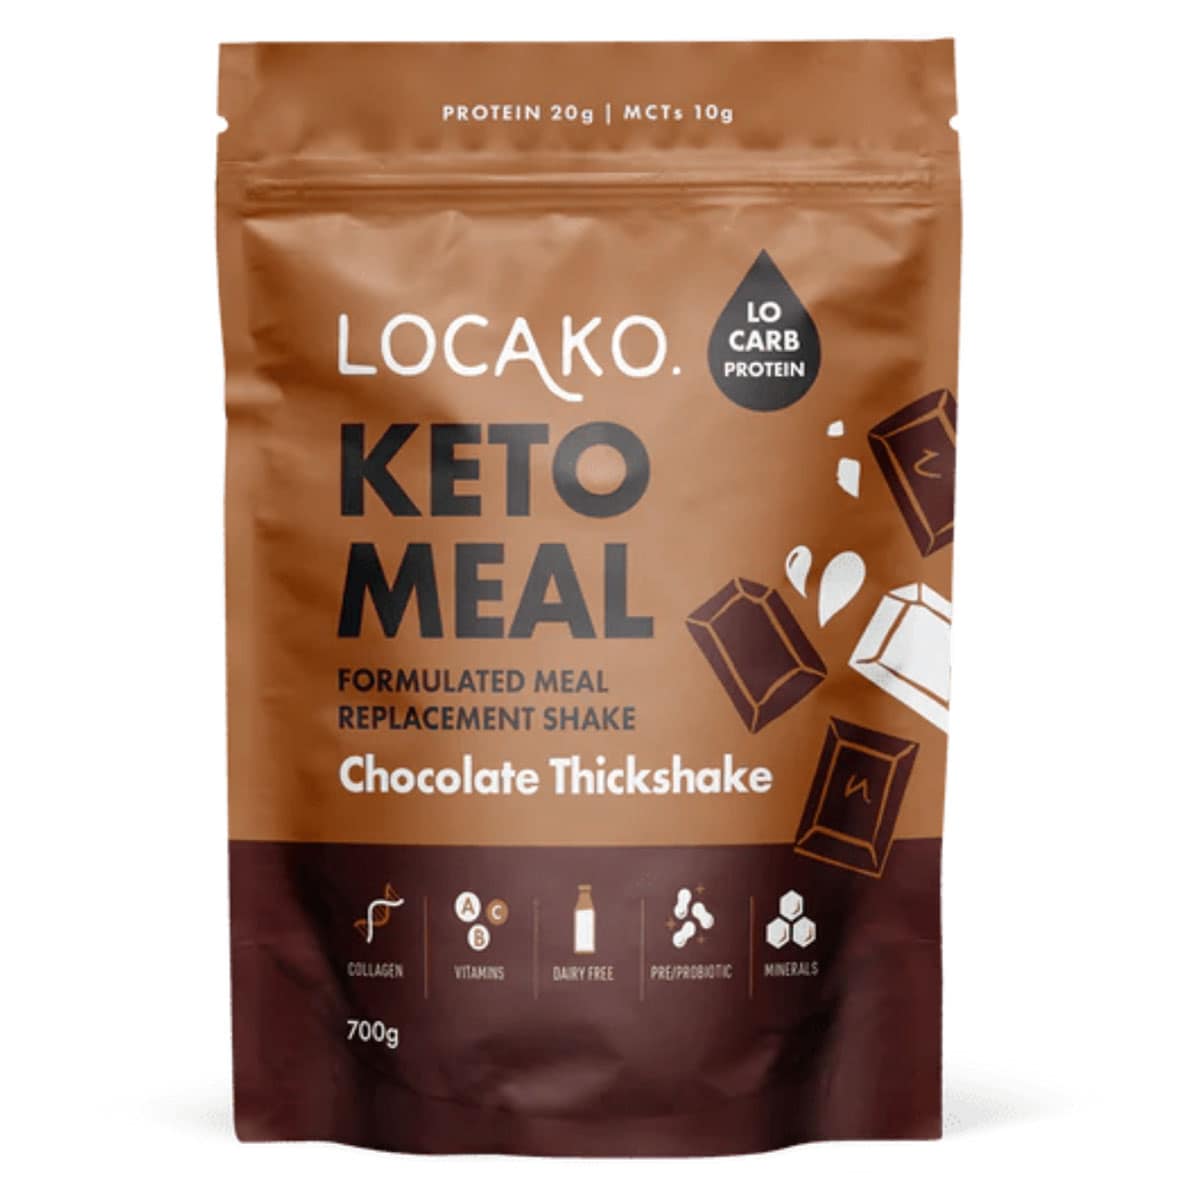 Locako Keto Meal Replacement Shake Chocolate Thickshake 700g